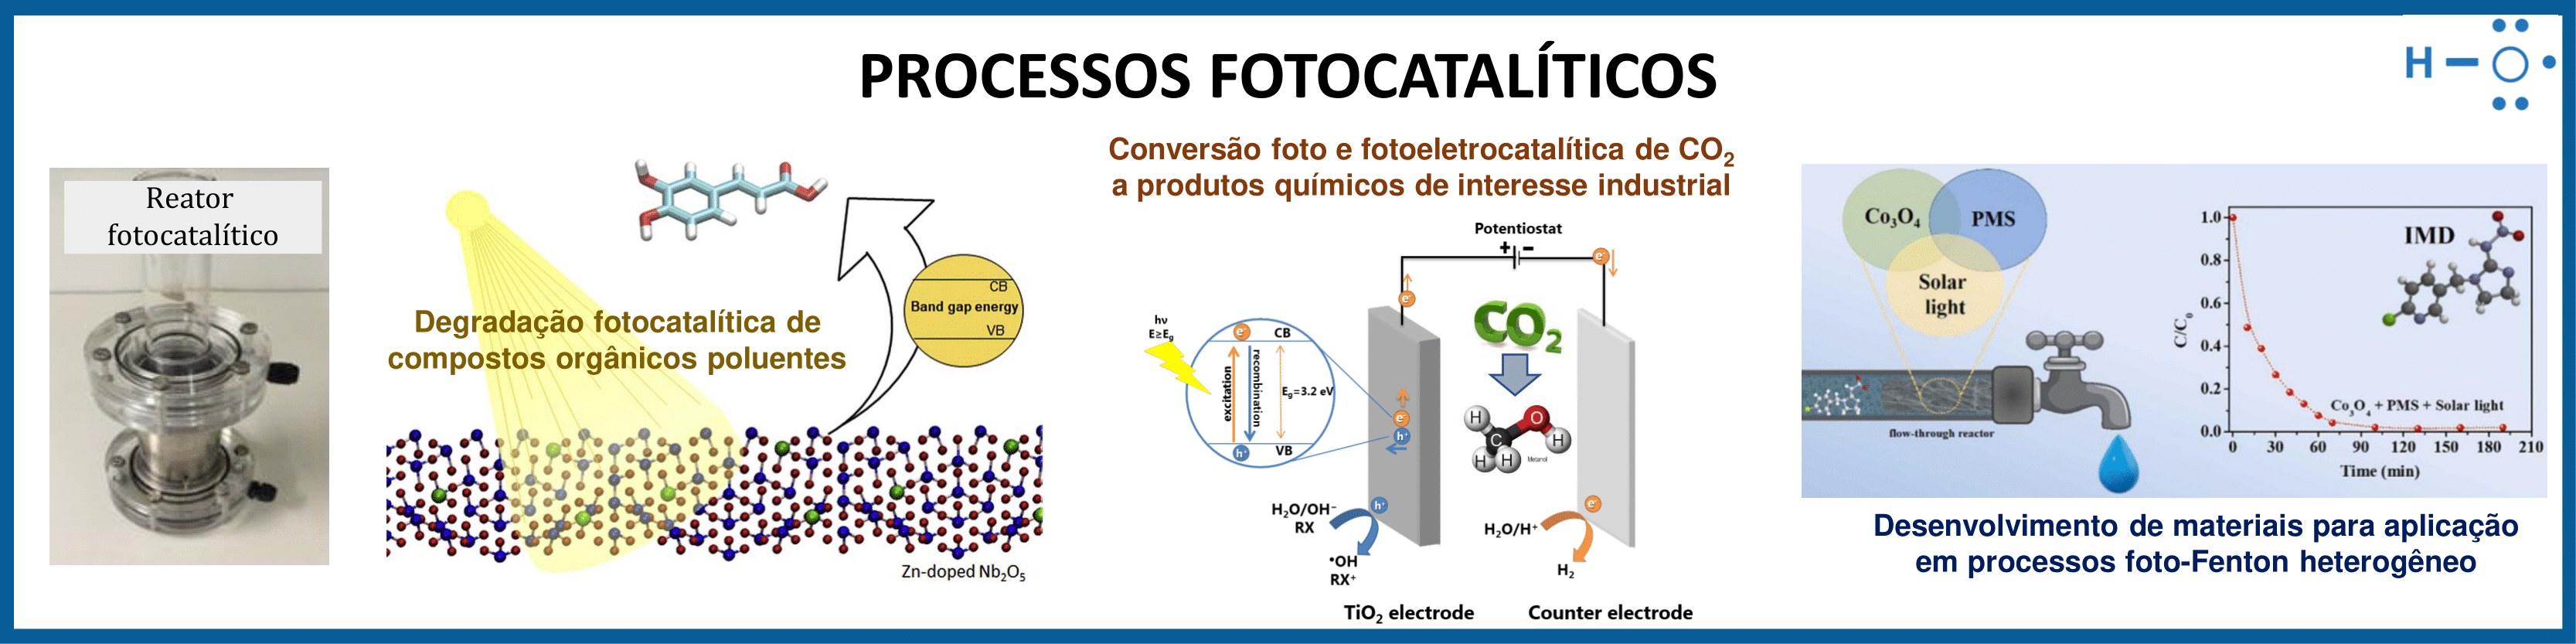 Processos Fotocatalíticos.